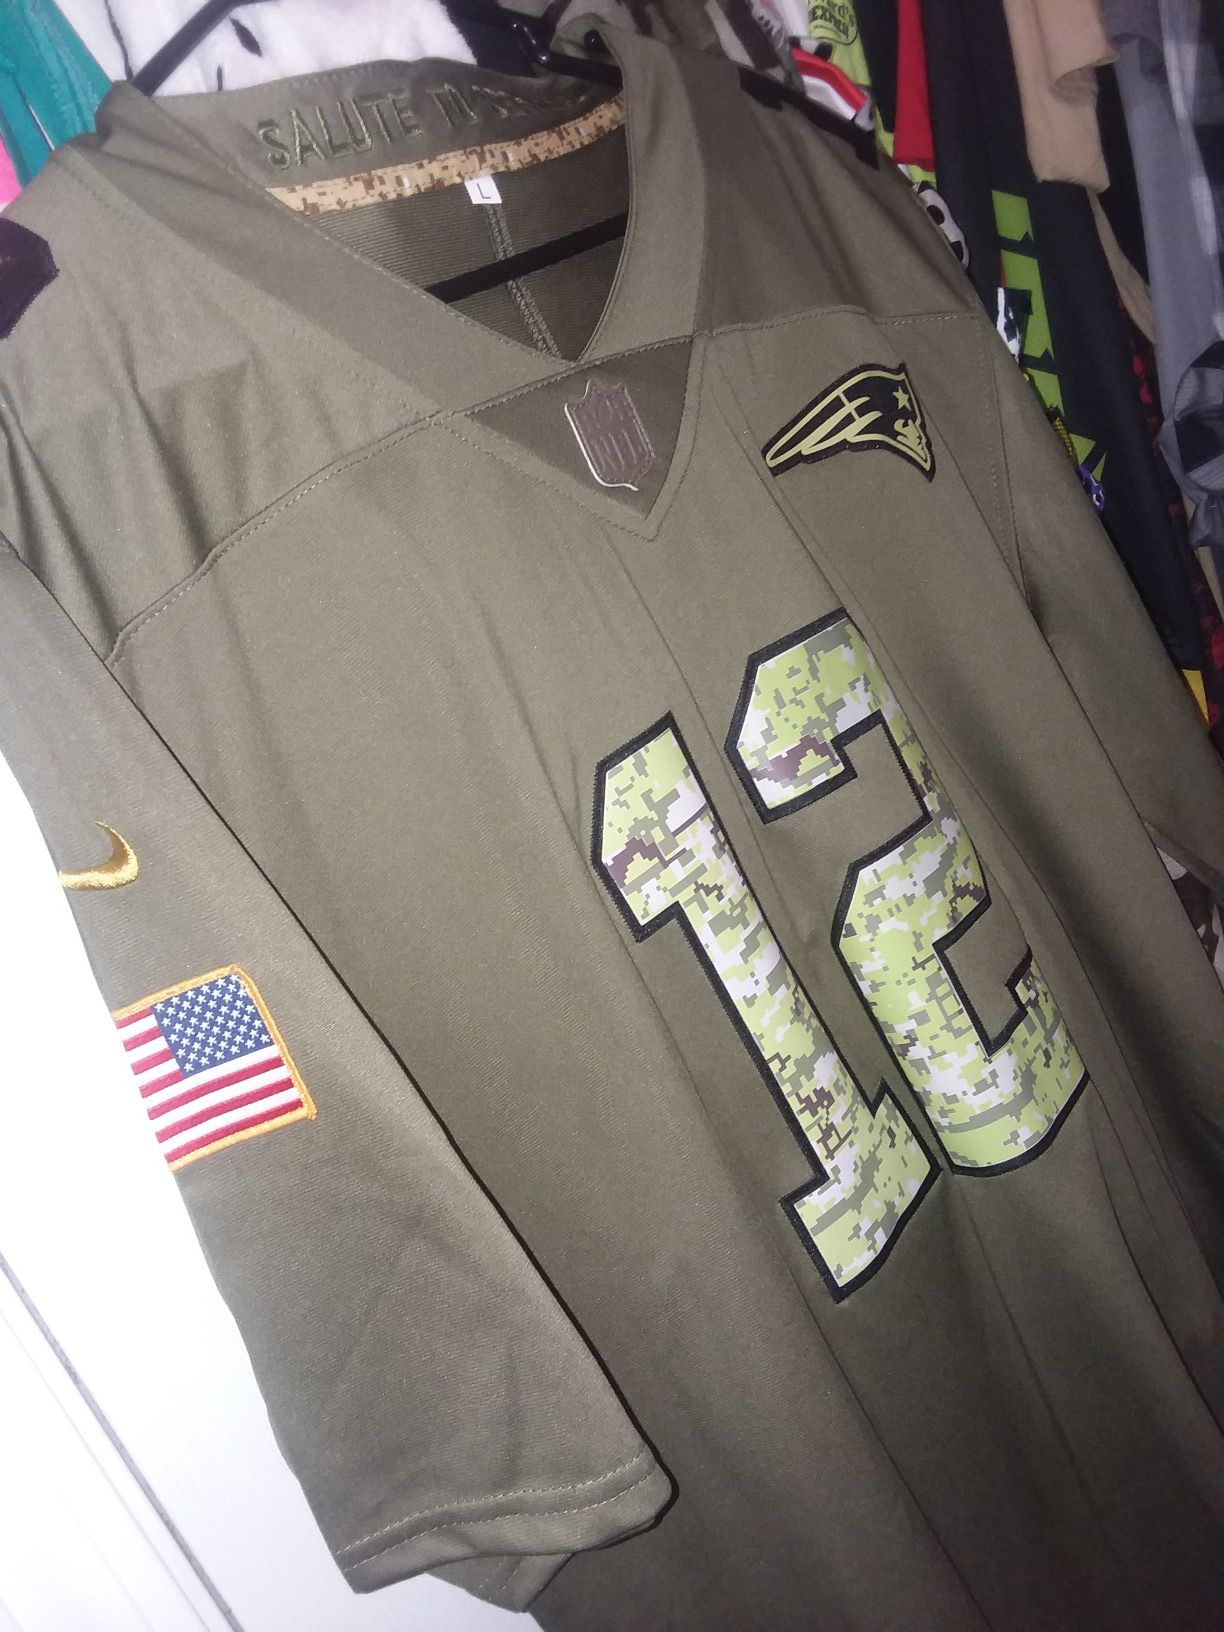 Salute to service patriots jersey Brady